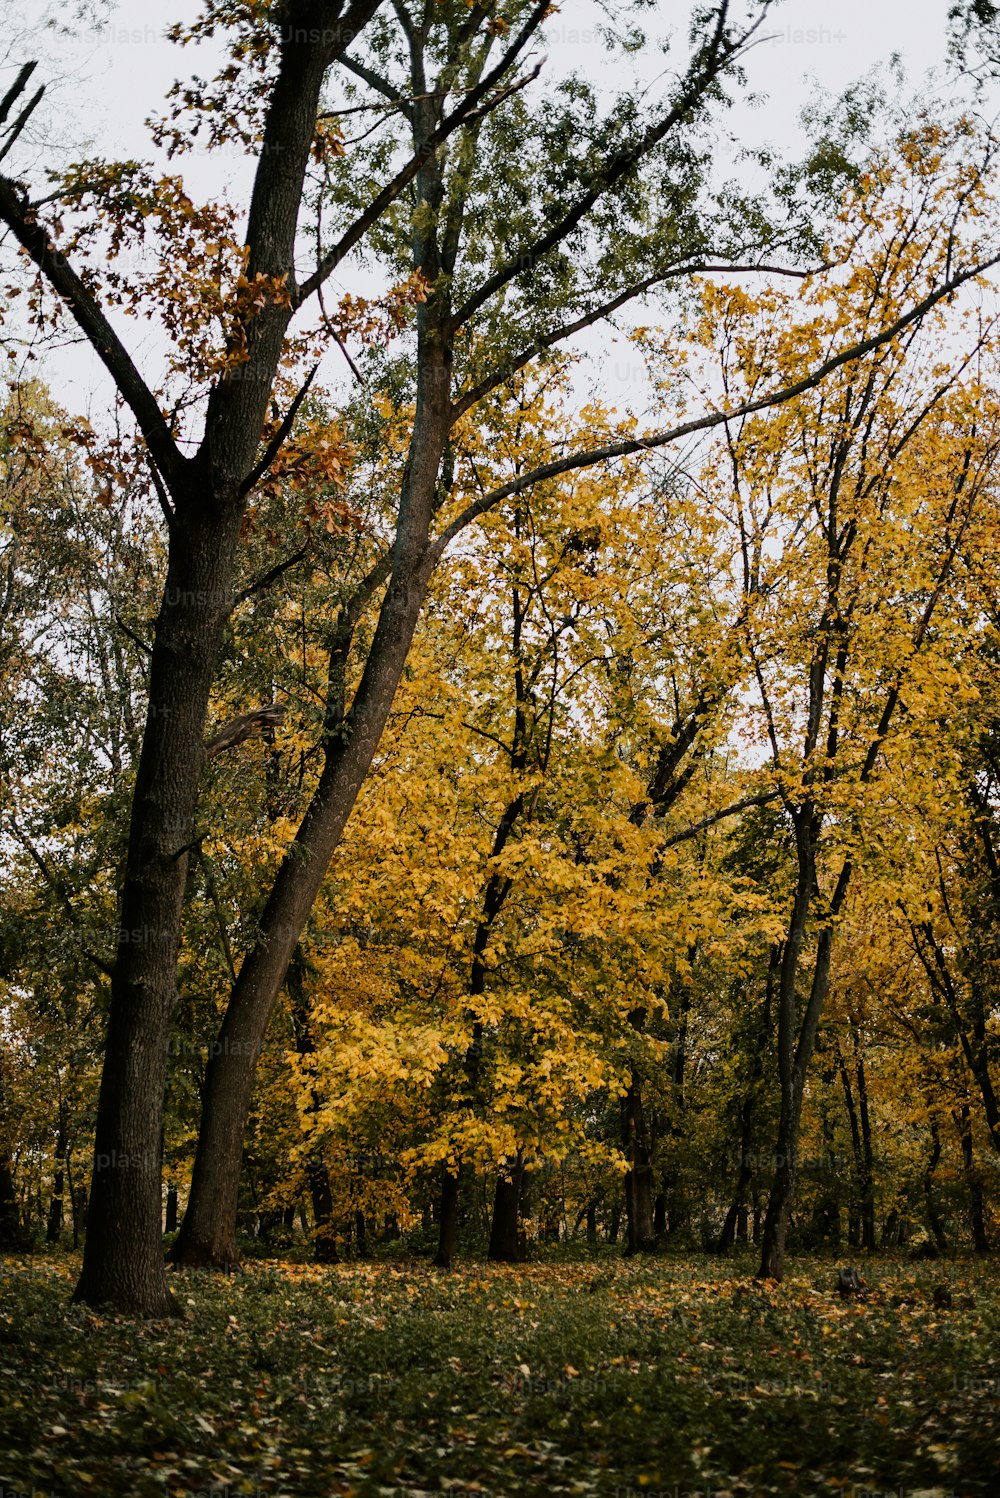 땅에 노란 잎사귀가 있는 나무 무리